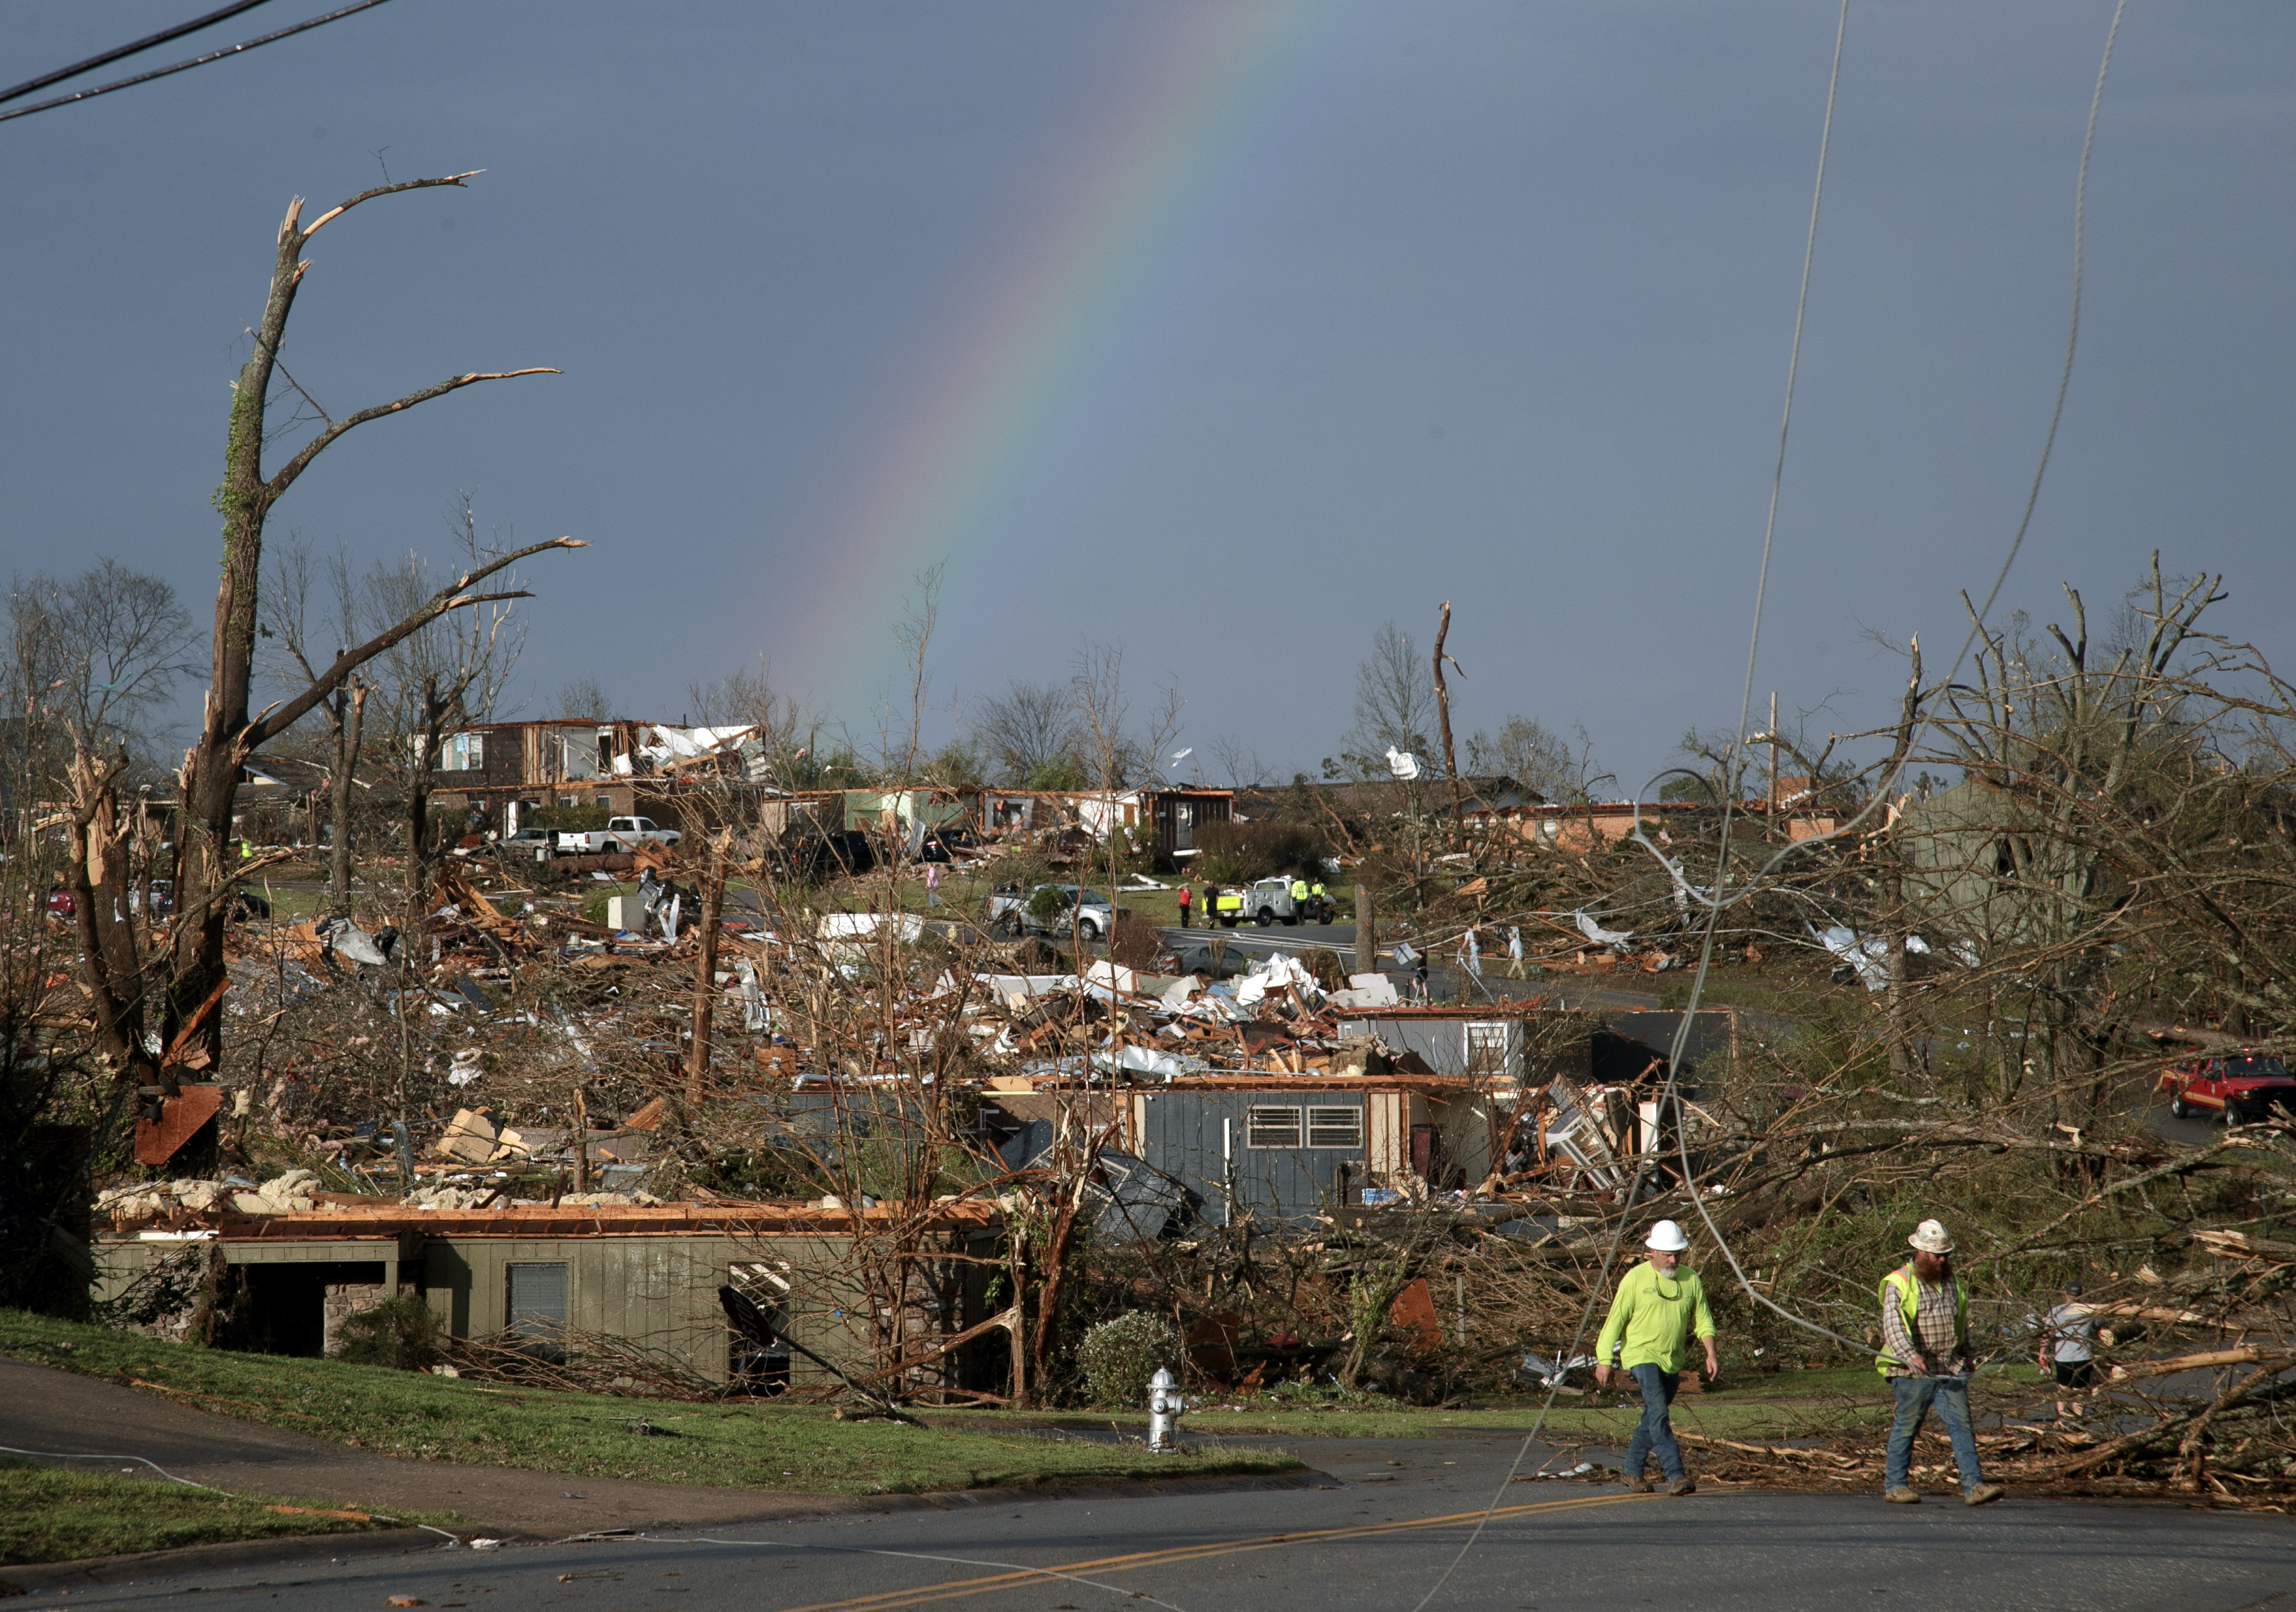 Images Show Little Rock, Arkansas Before And After Devastating Tornado